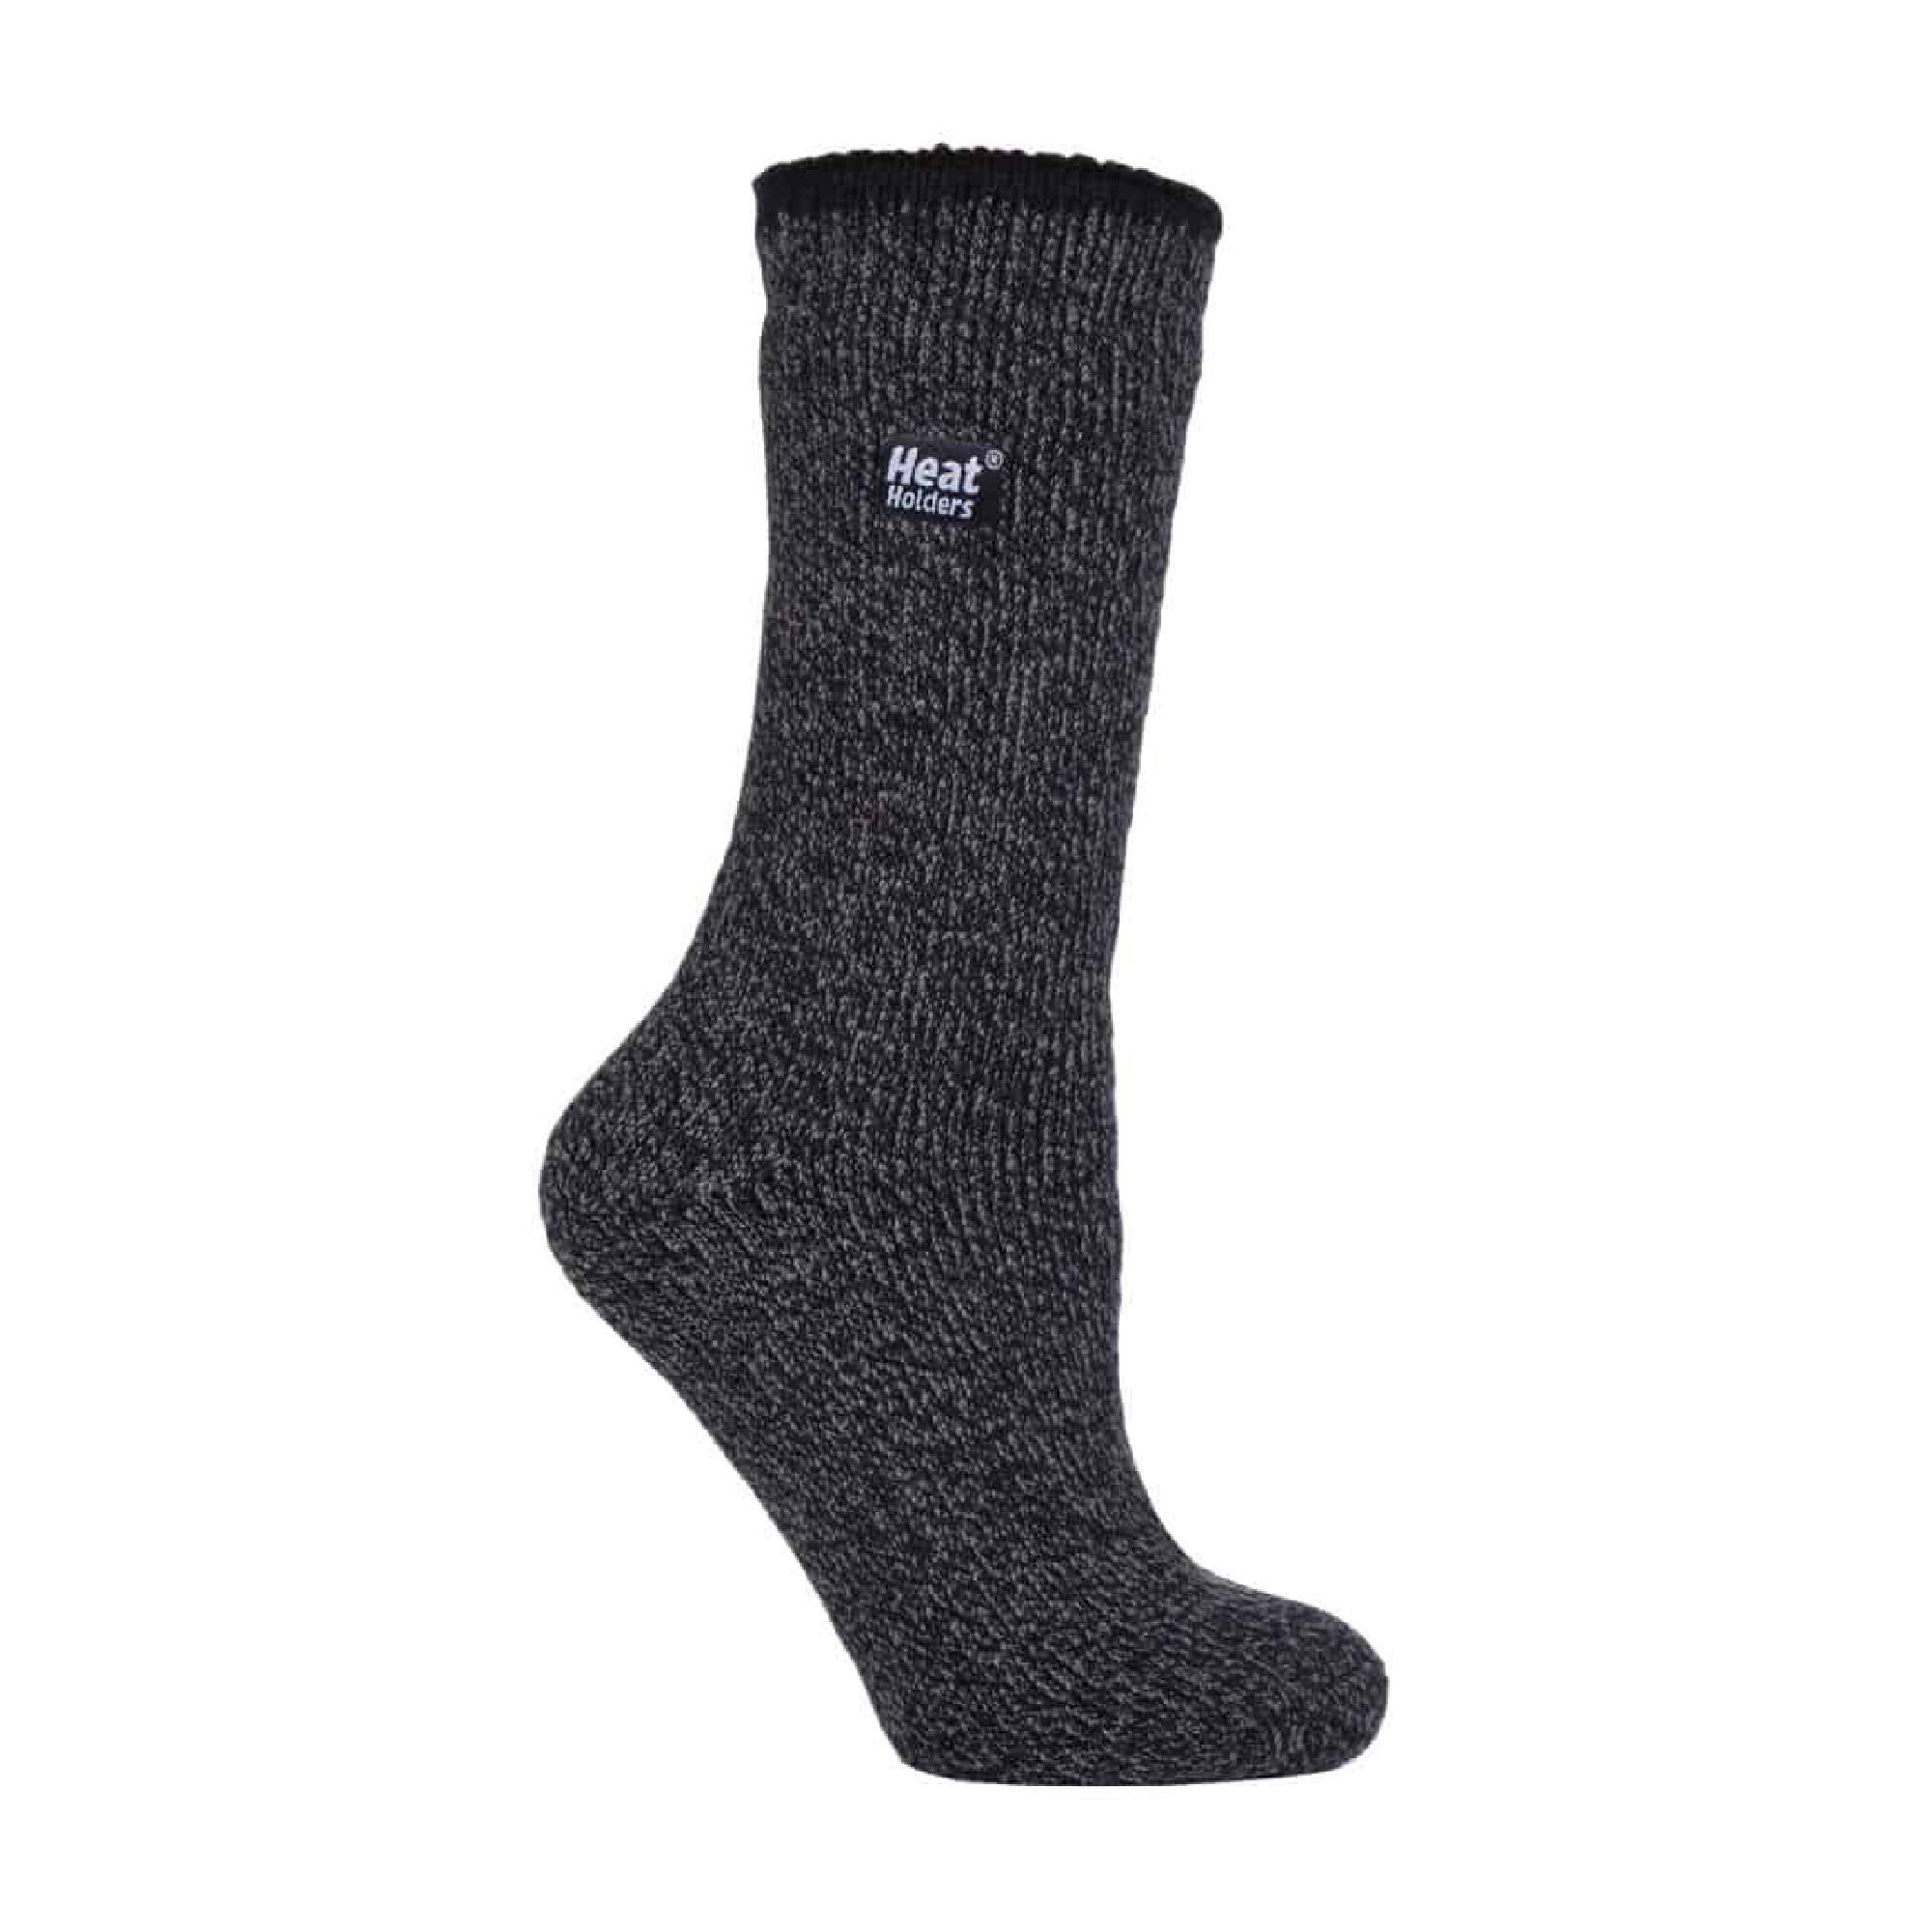 HEAT HOLDERS Ladies Thick Reinforced 2.9 TOG Winter Warm Merino Wool Thermal Socks